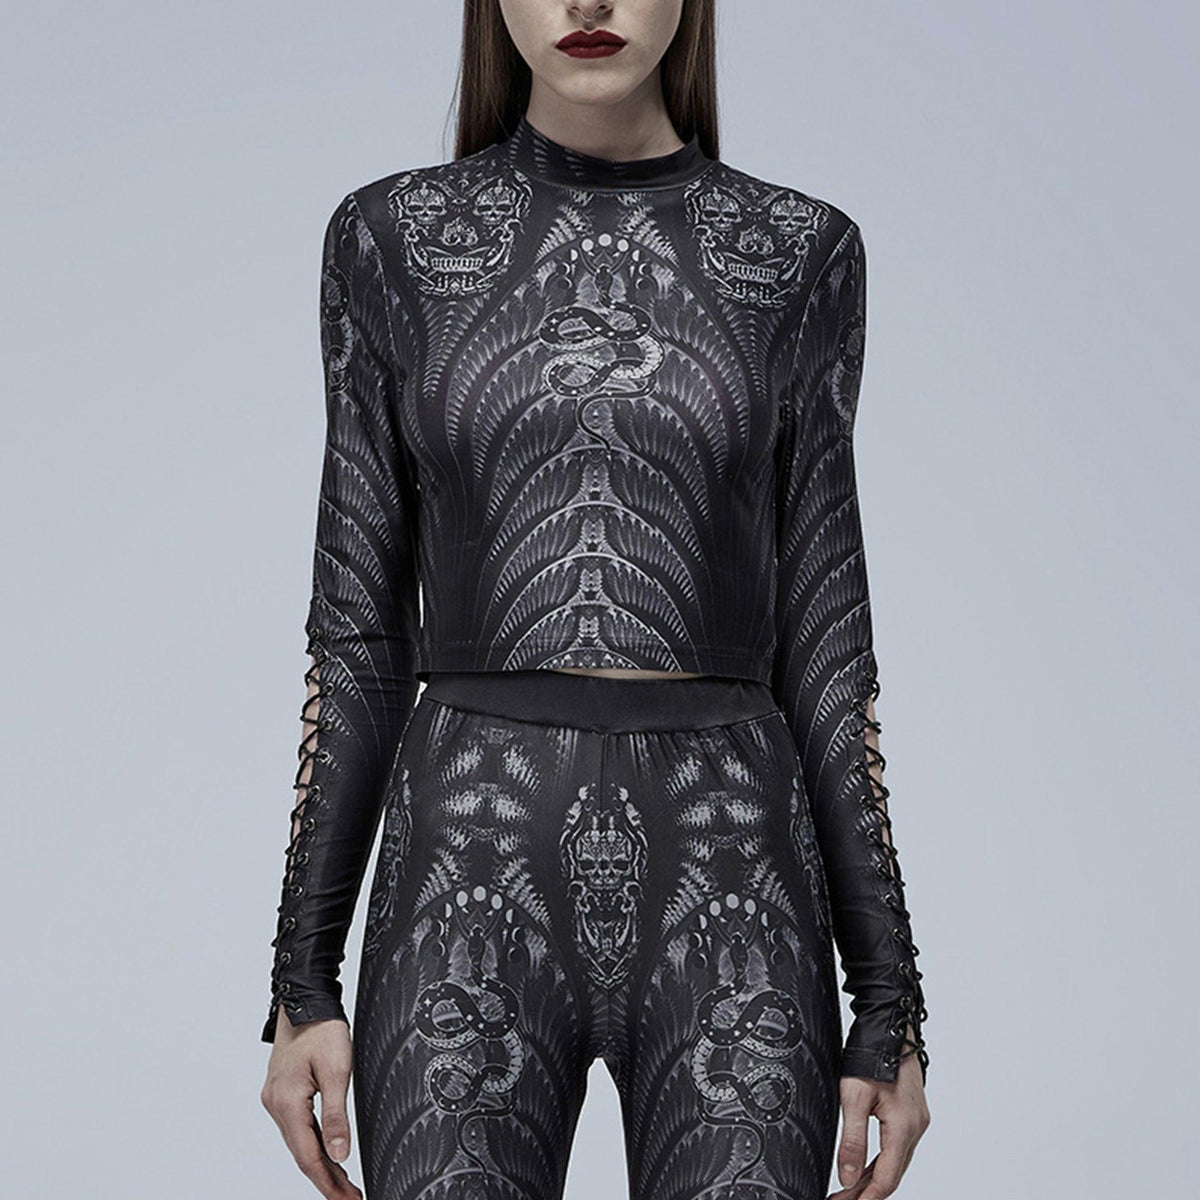 Gothic Skeleton Print Mesh Slim T-shirt, Sexy Long Sleeve Costume For Women - Wonder Skull